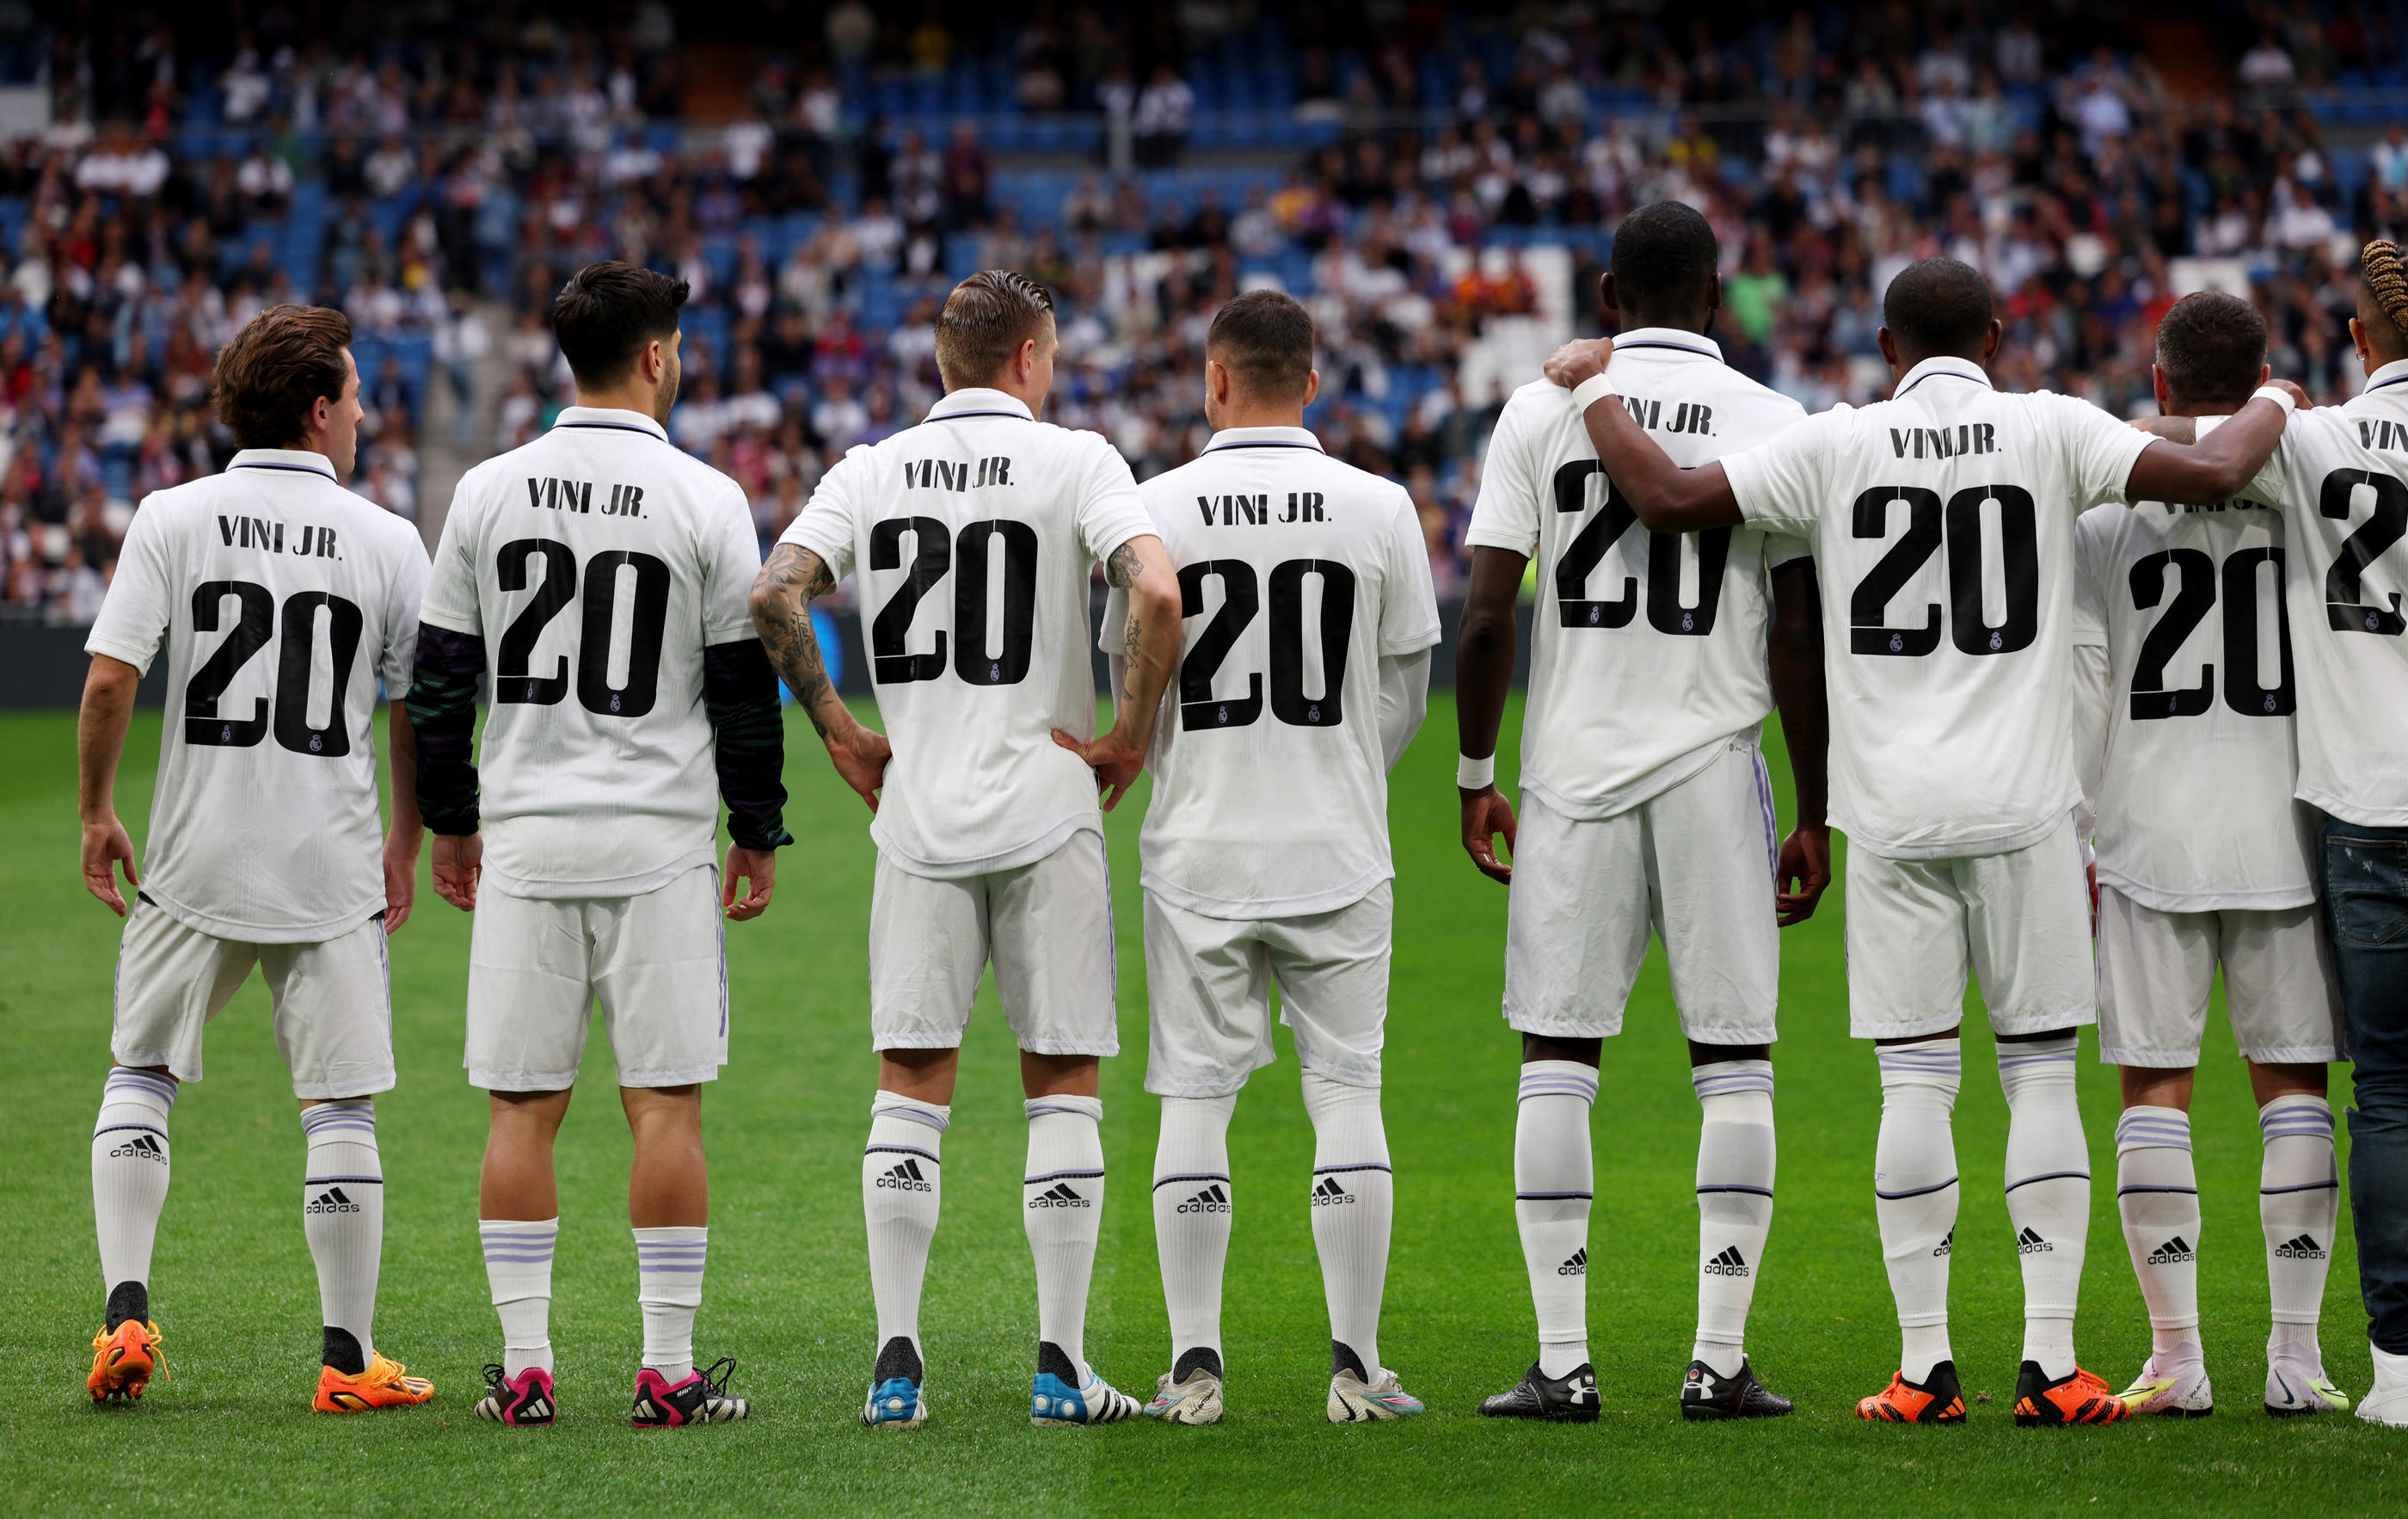 Les joueurs du Real portent tous un maillot floqué "Vini Jr" à leur entrée. REUTERS/Violeta Santos Moura